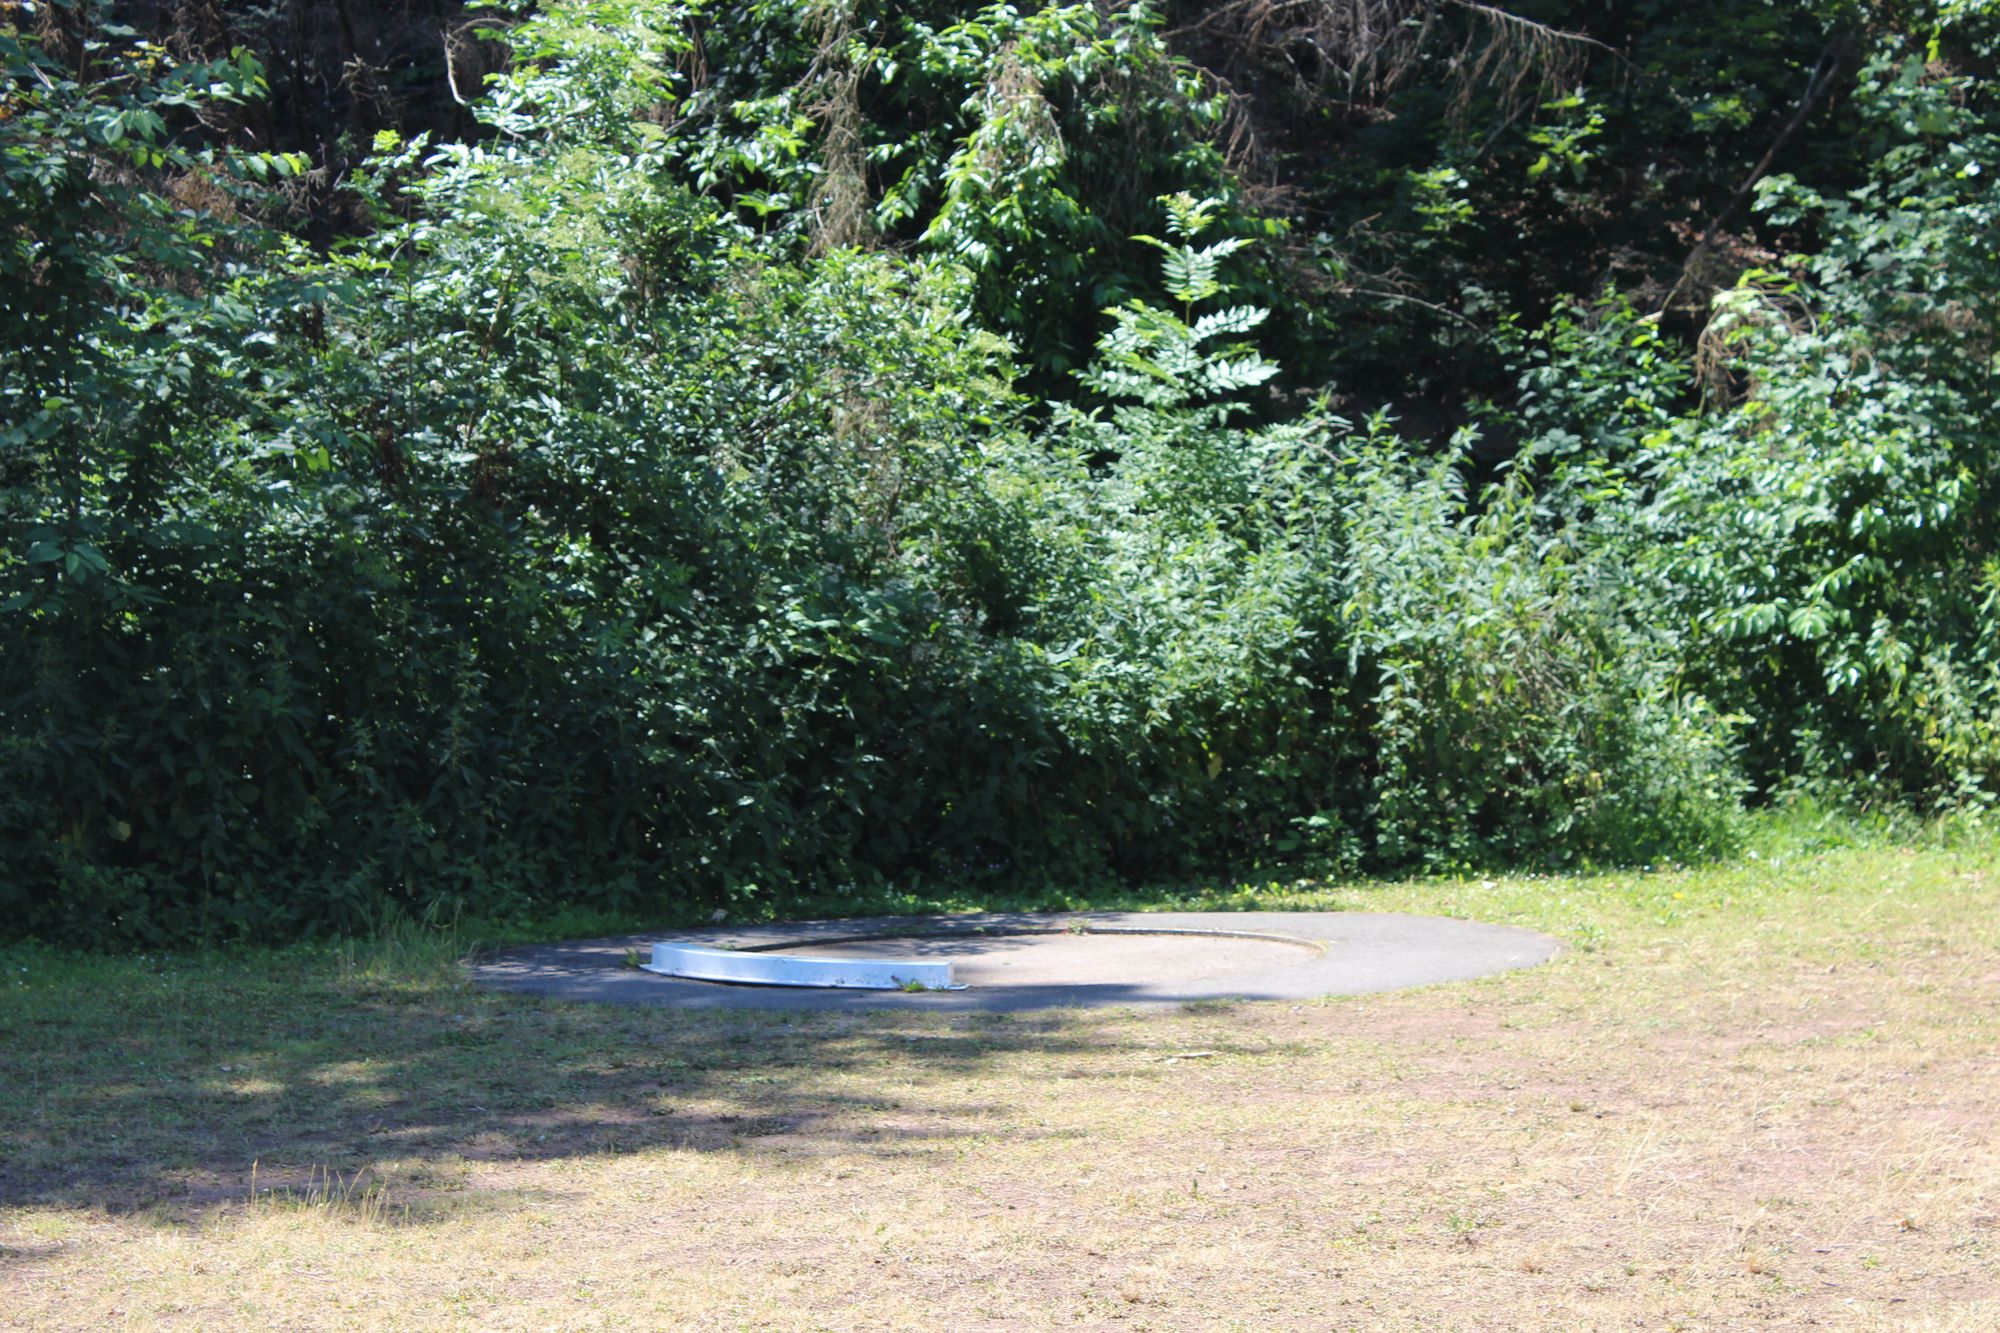 Das Bild zeigt eine Kugelstoßanlage. Der Rasen ist vertrocknet.